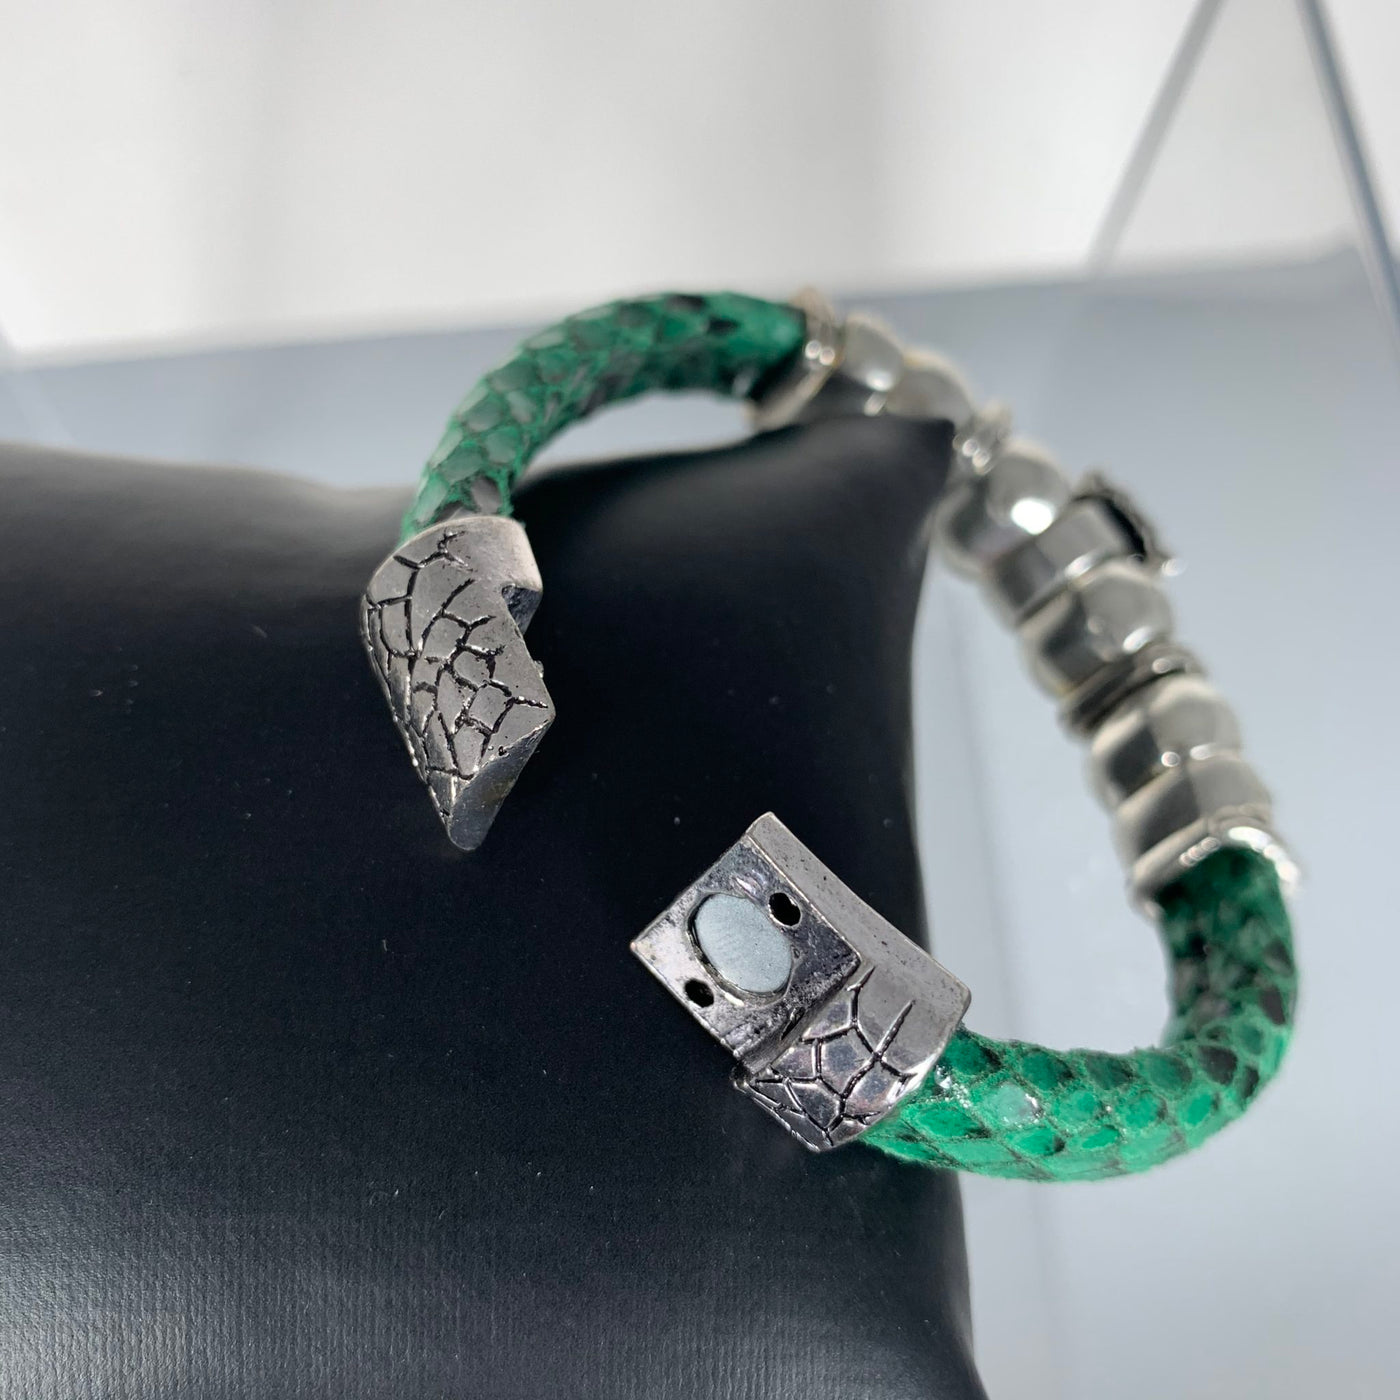 Green Faux Snake Skin Band Bracelet Featuring a Beloved Ladybug